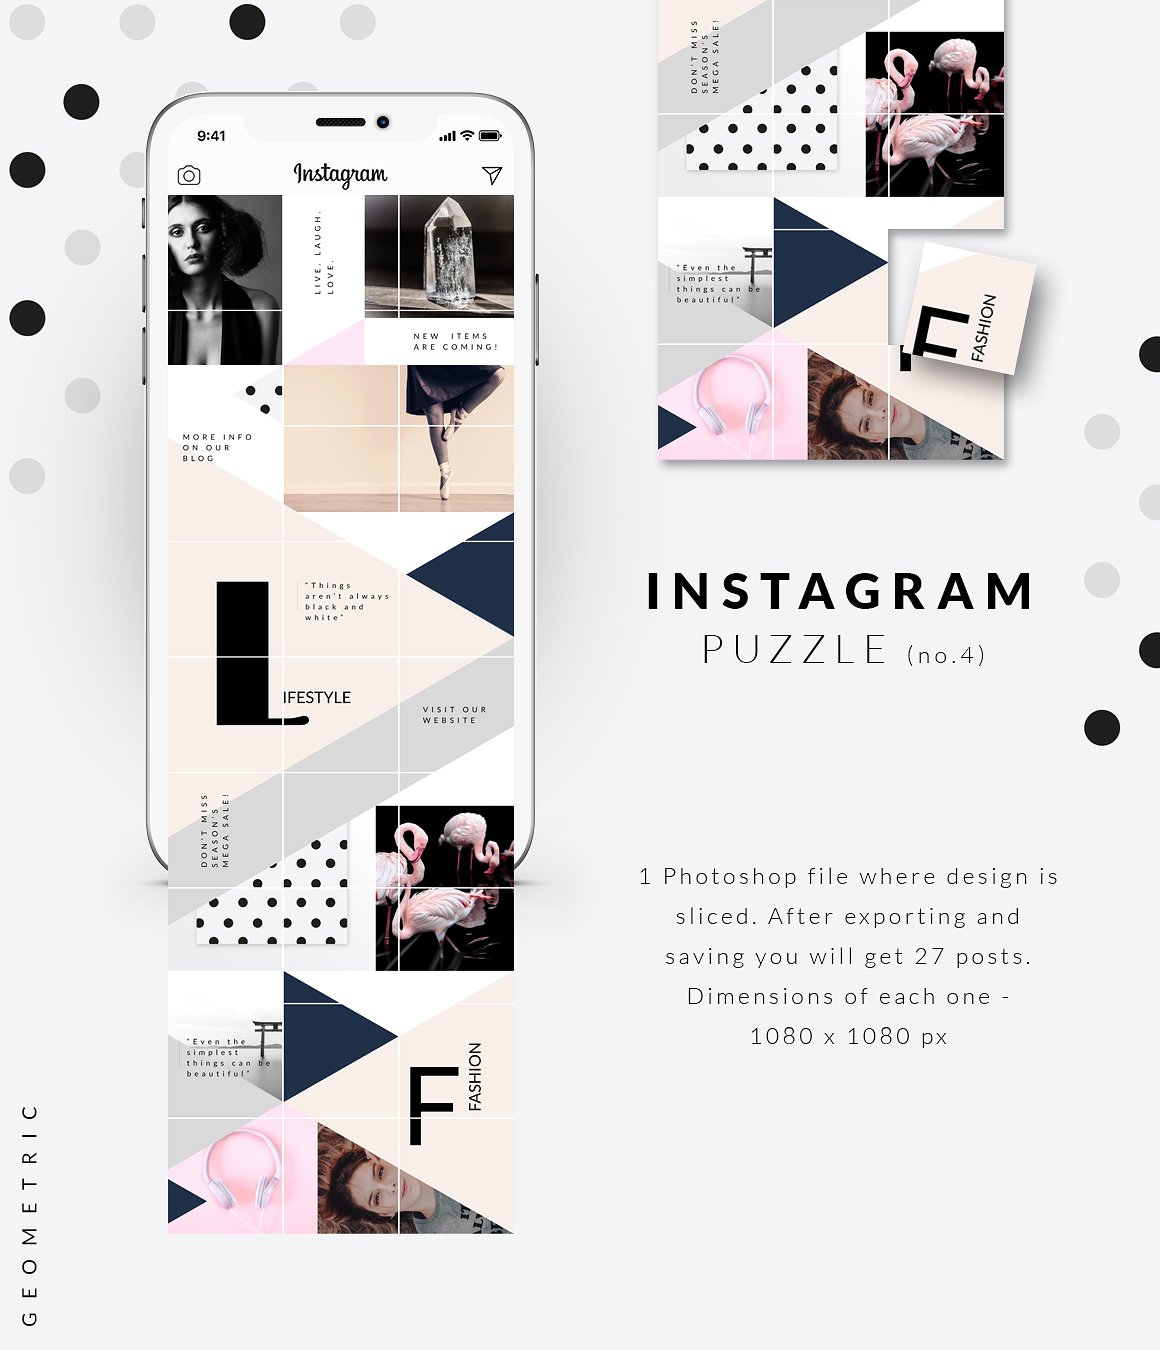 时尚高端几何形状布局的Instagram模板大洋岛精选 Instagram PUZZLE template -Geometric [psd]插图4